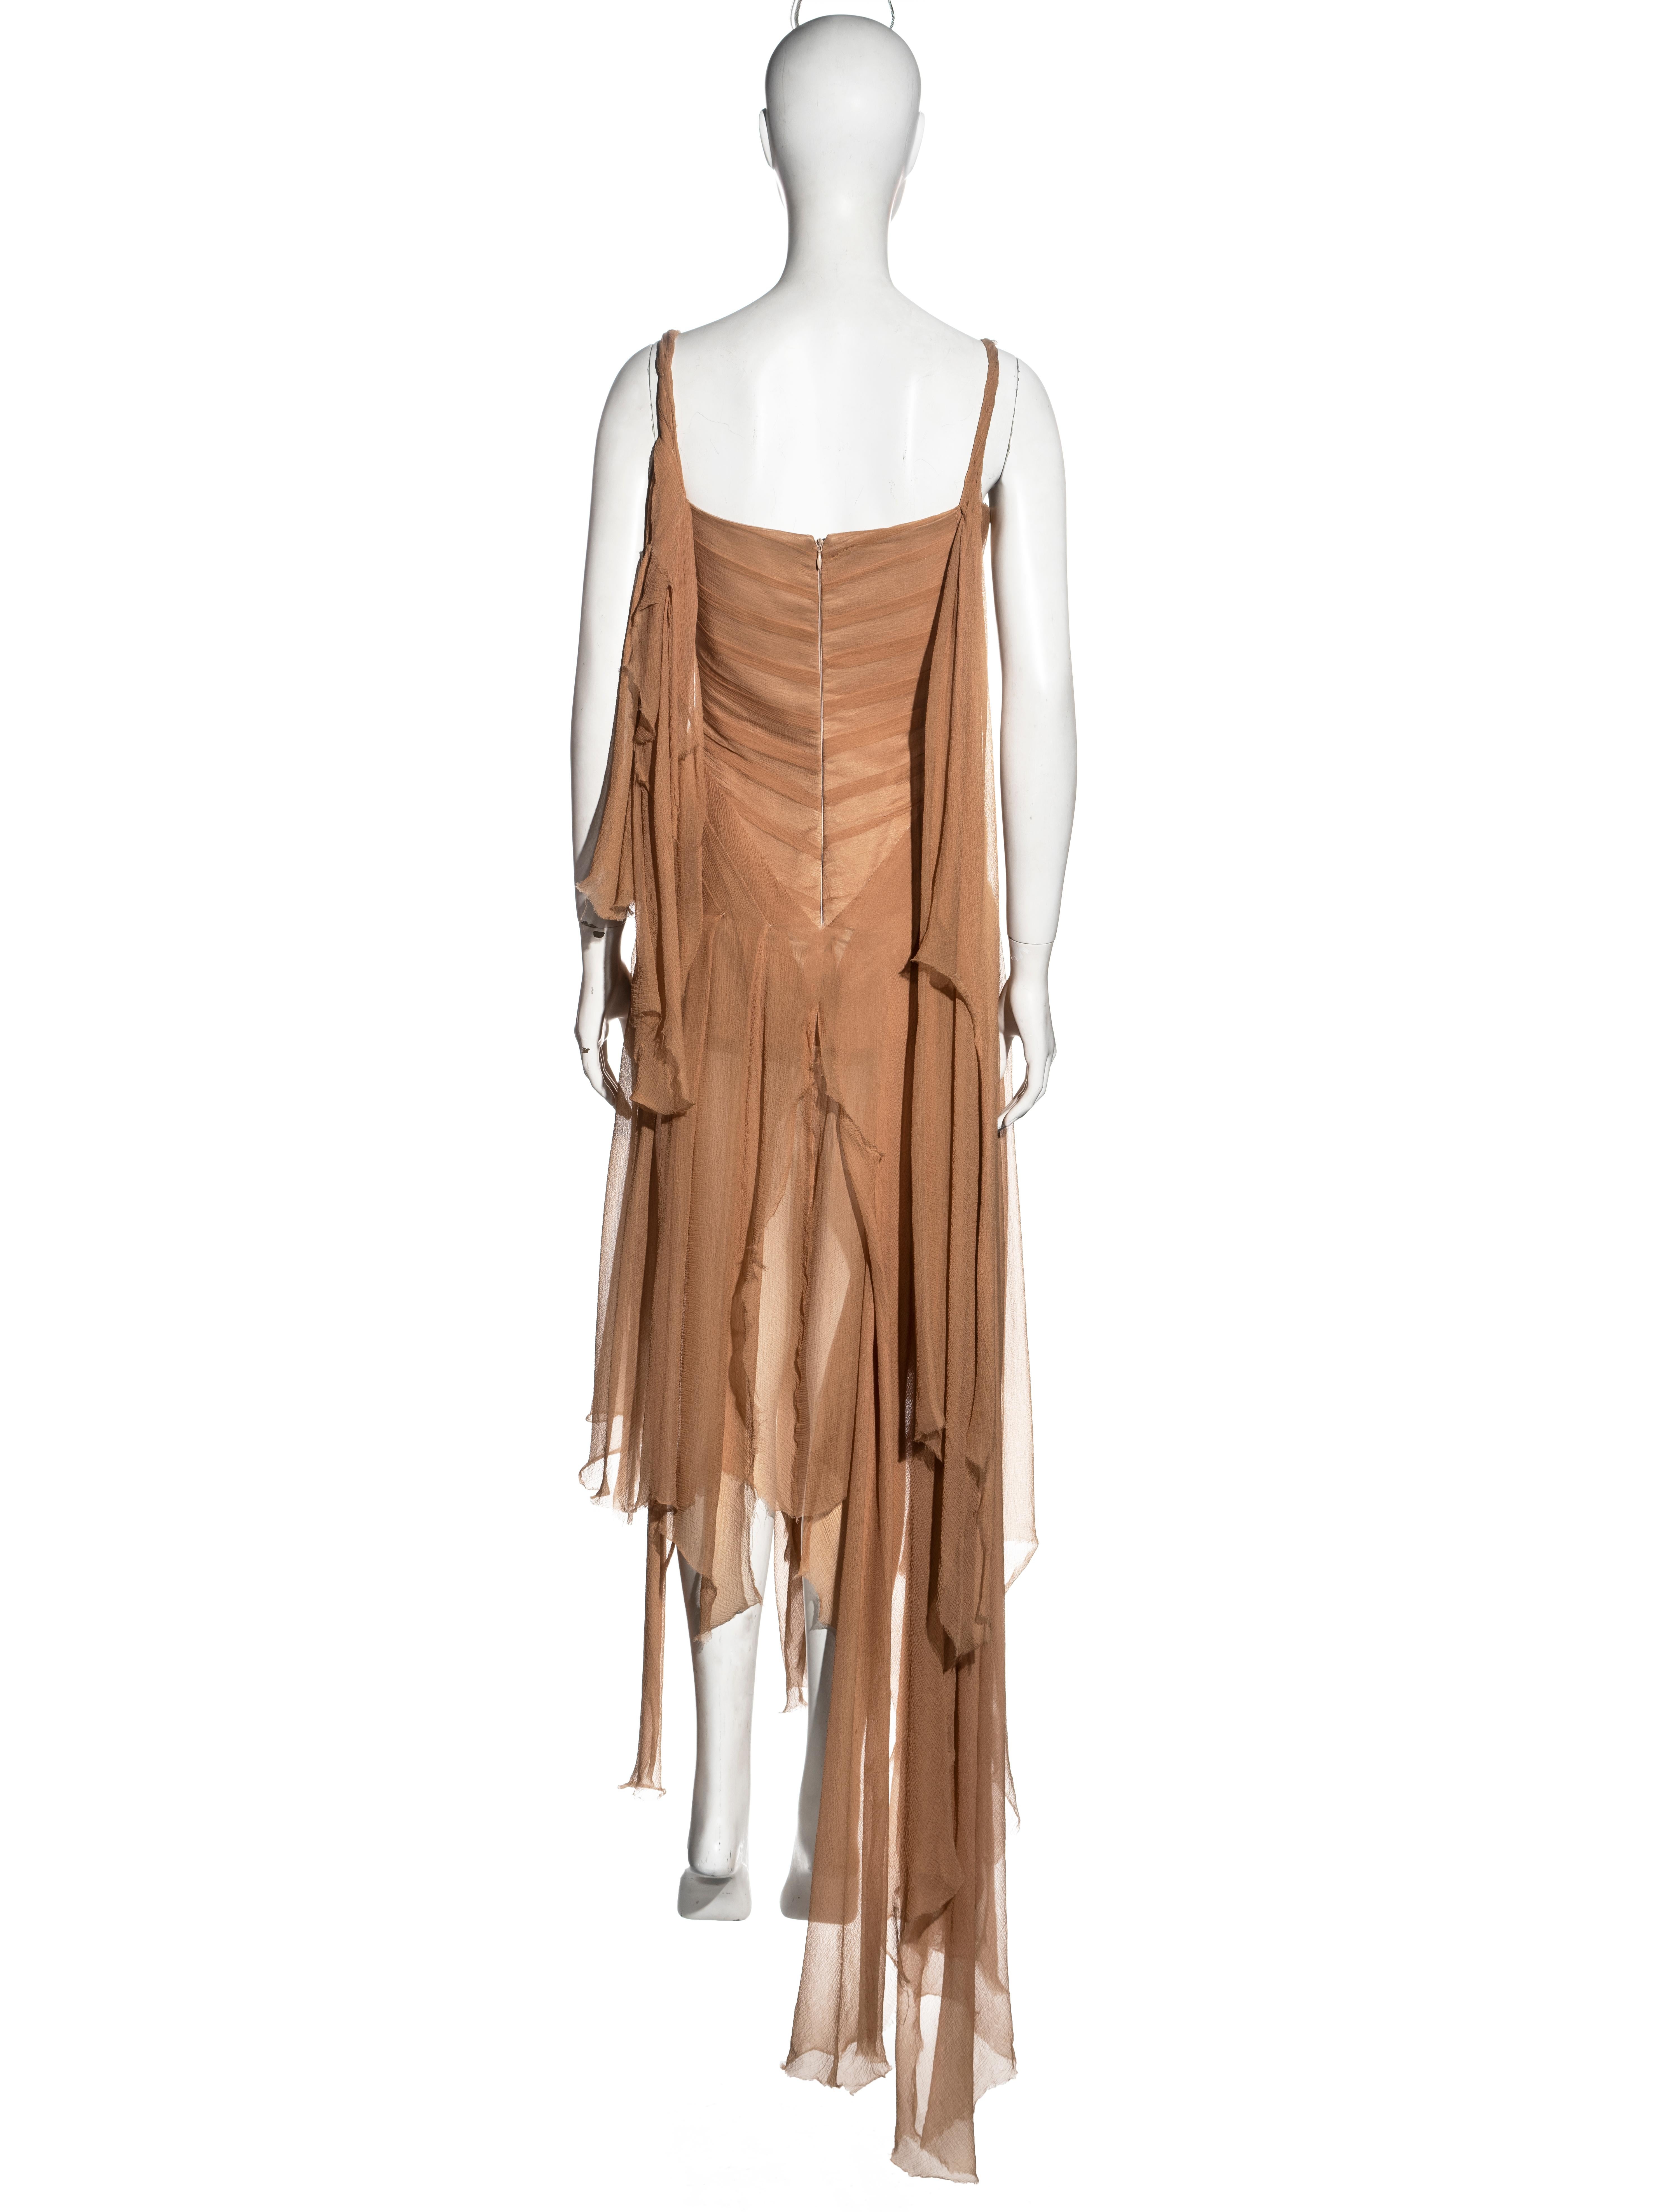 Alexander McQueen nude silk chiffon shipwreck evening dress, ss 2003 For Sale 3